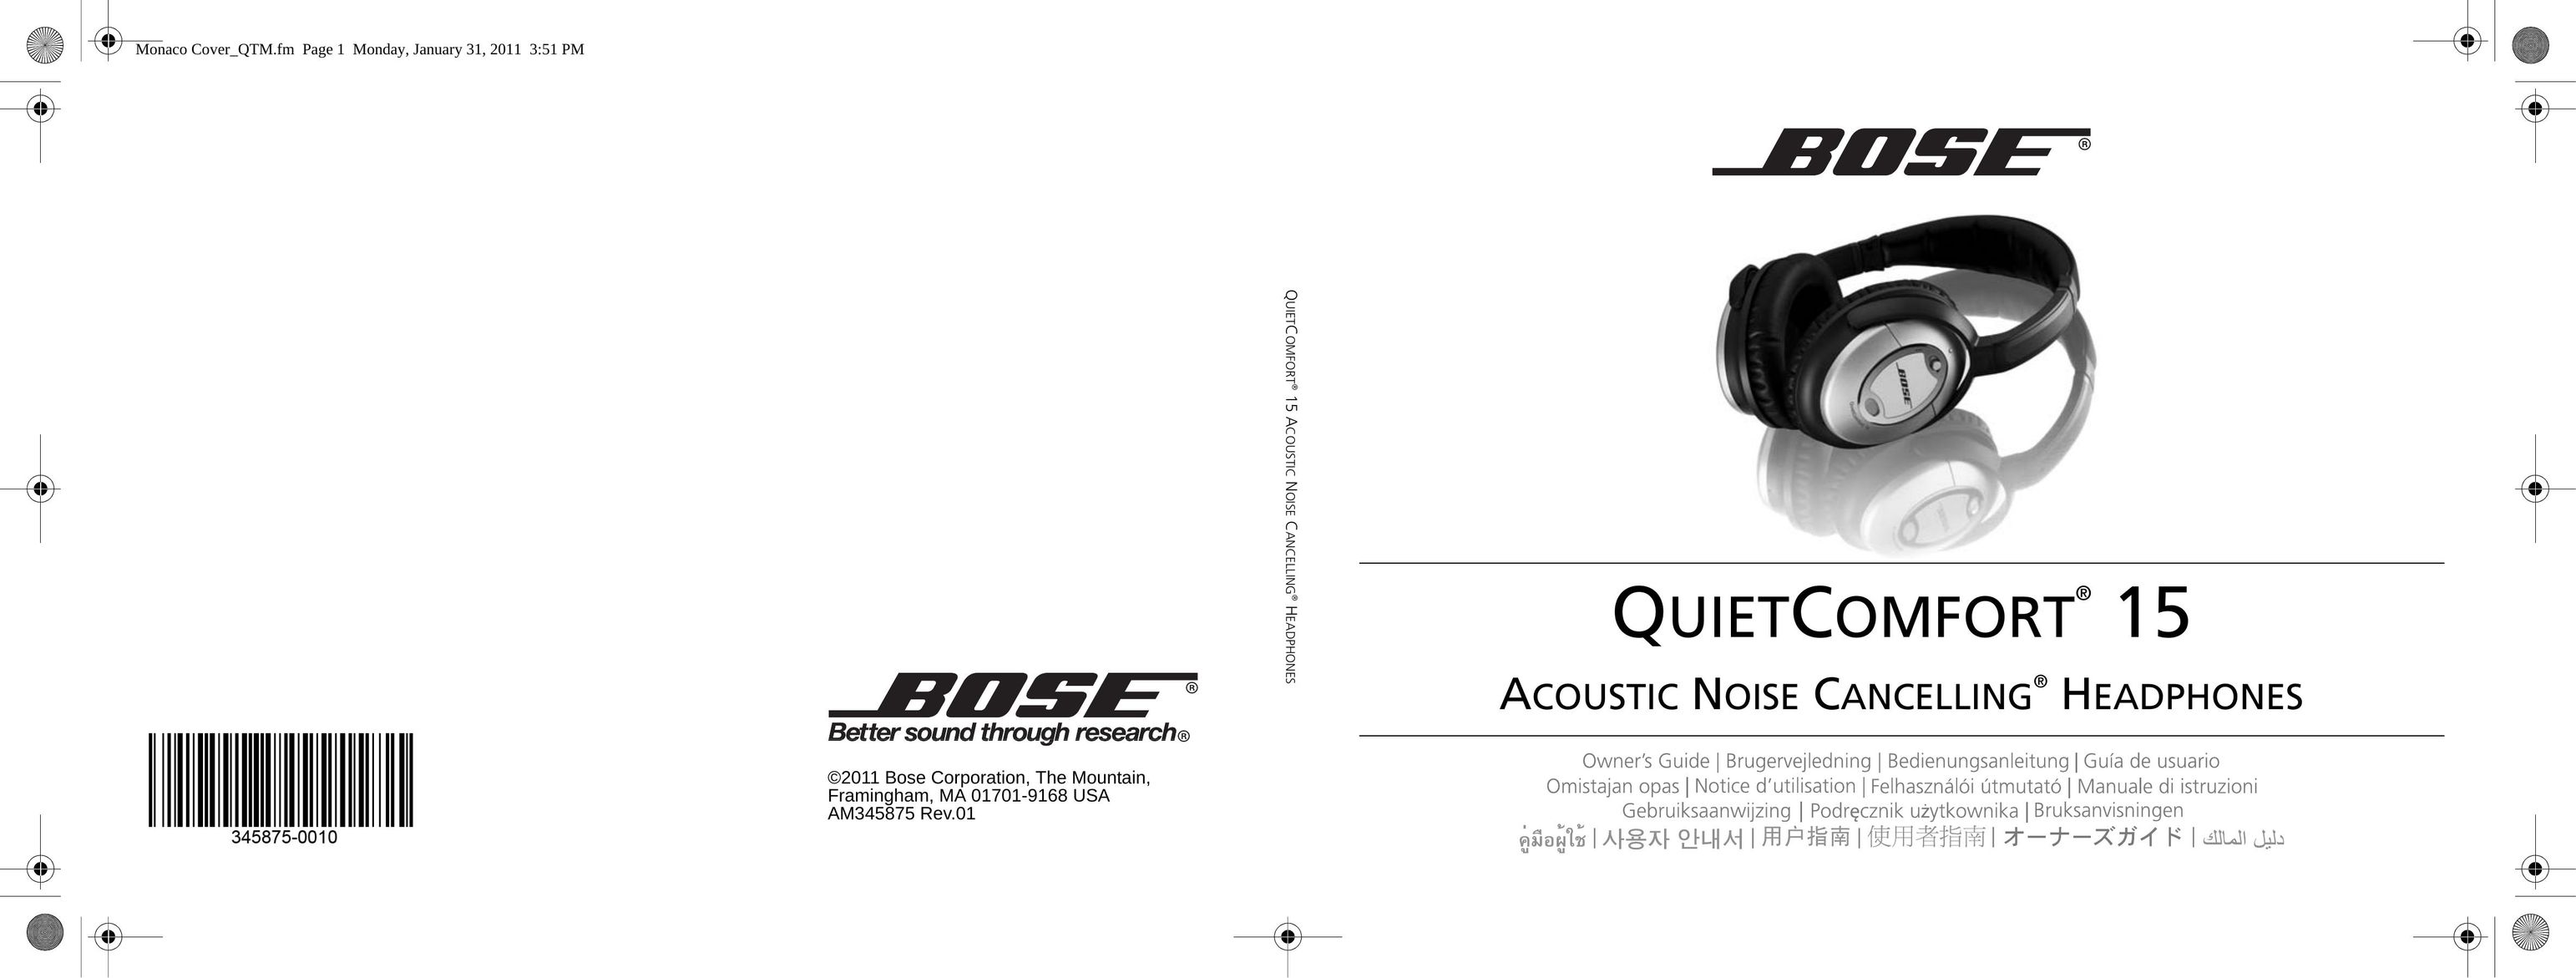 Bose 15 Headphones User Manual